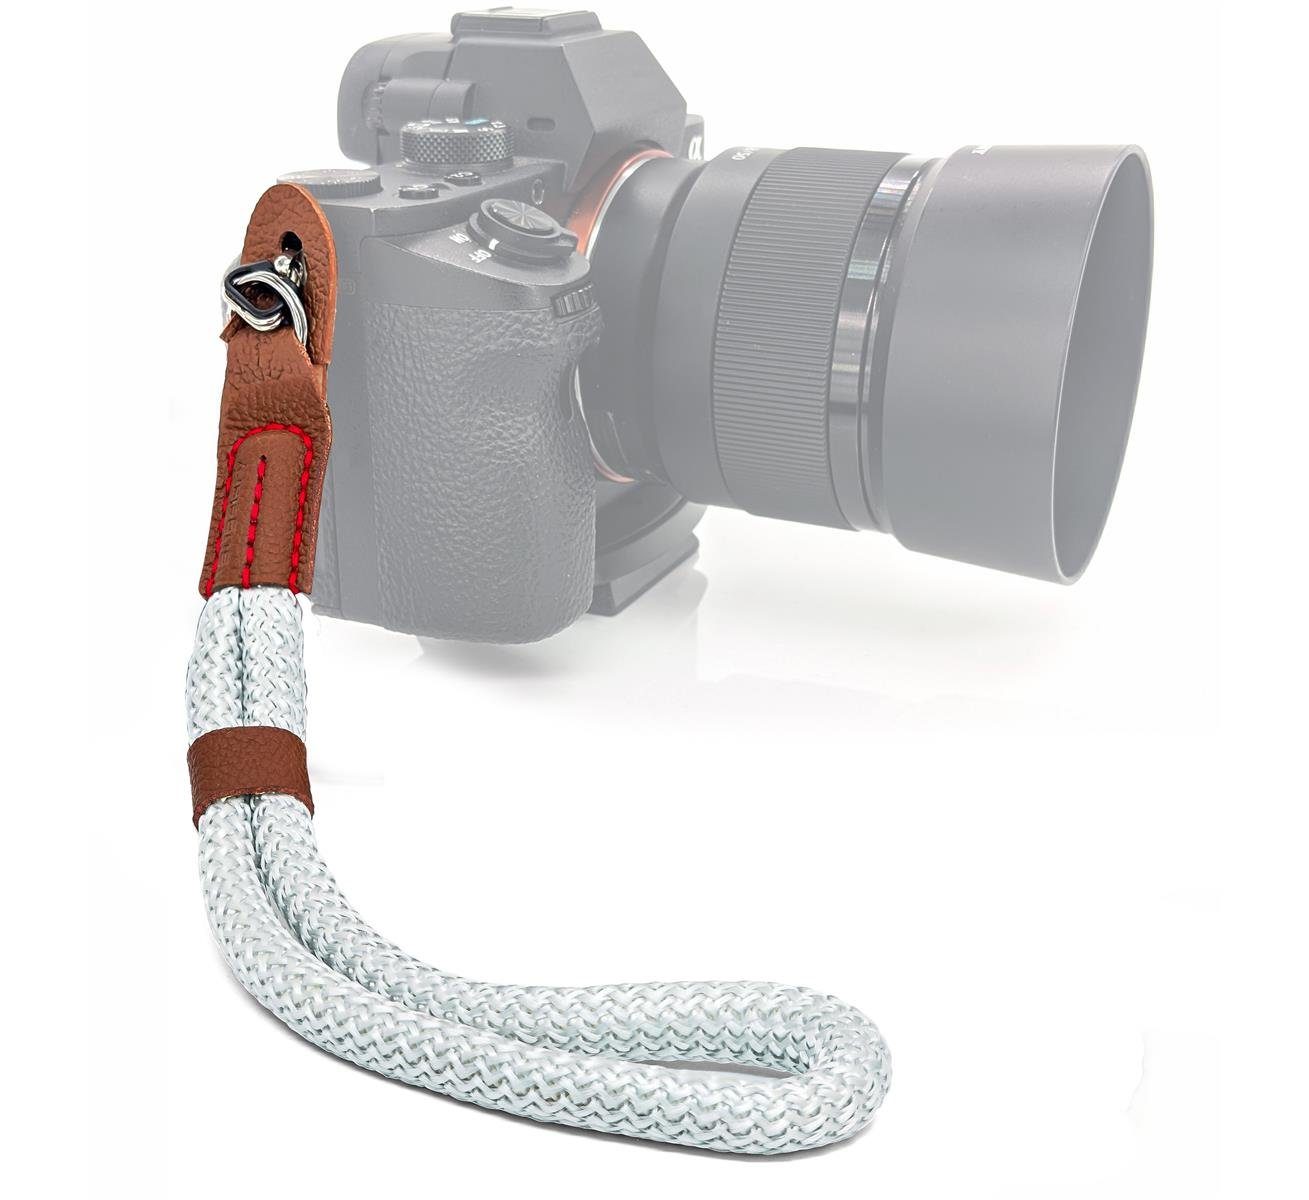 MyGadget Tragegurt Kamera Handschlaufe Kunstleder Handgelenkschlaufe,  MyGadget Kamera Handschlaufe Seil mit Kunstleder Applikationen Retro Look -  Trageschlaufe Handgelenkschlaufe für DSLR SLR Canon, Nikon, Sony - Weiß